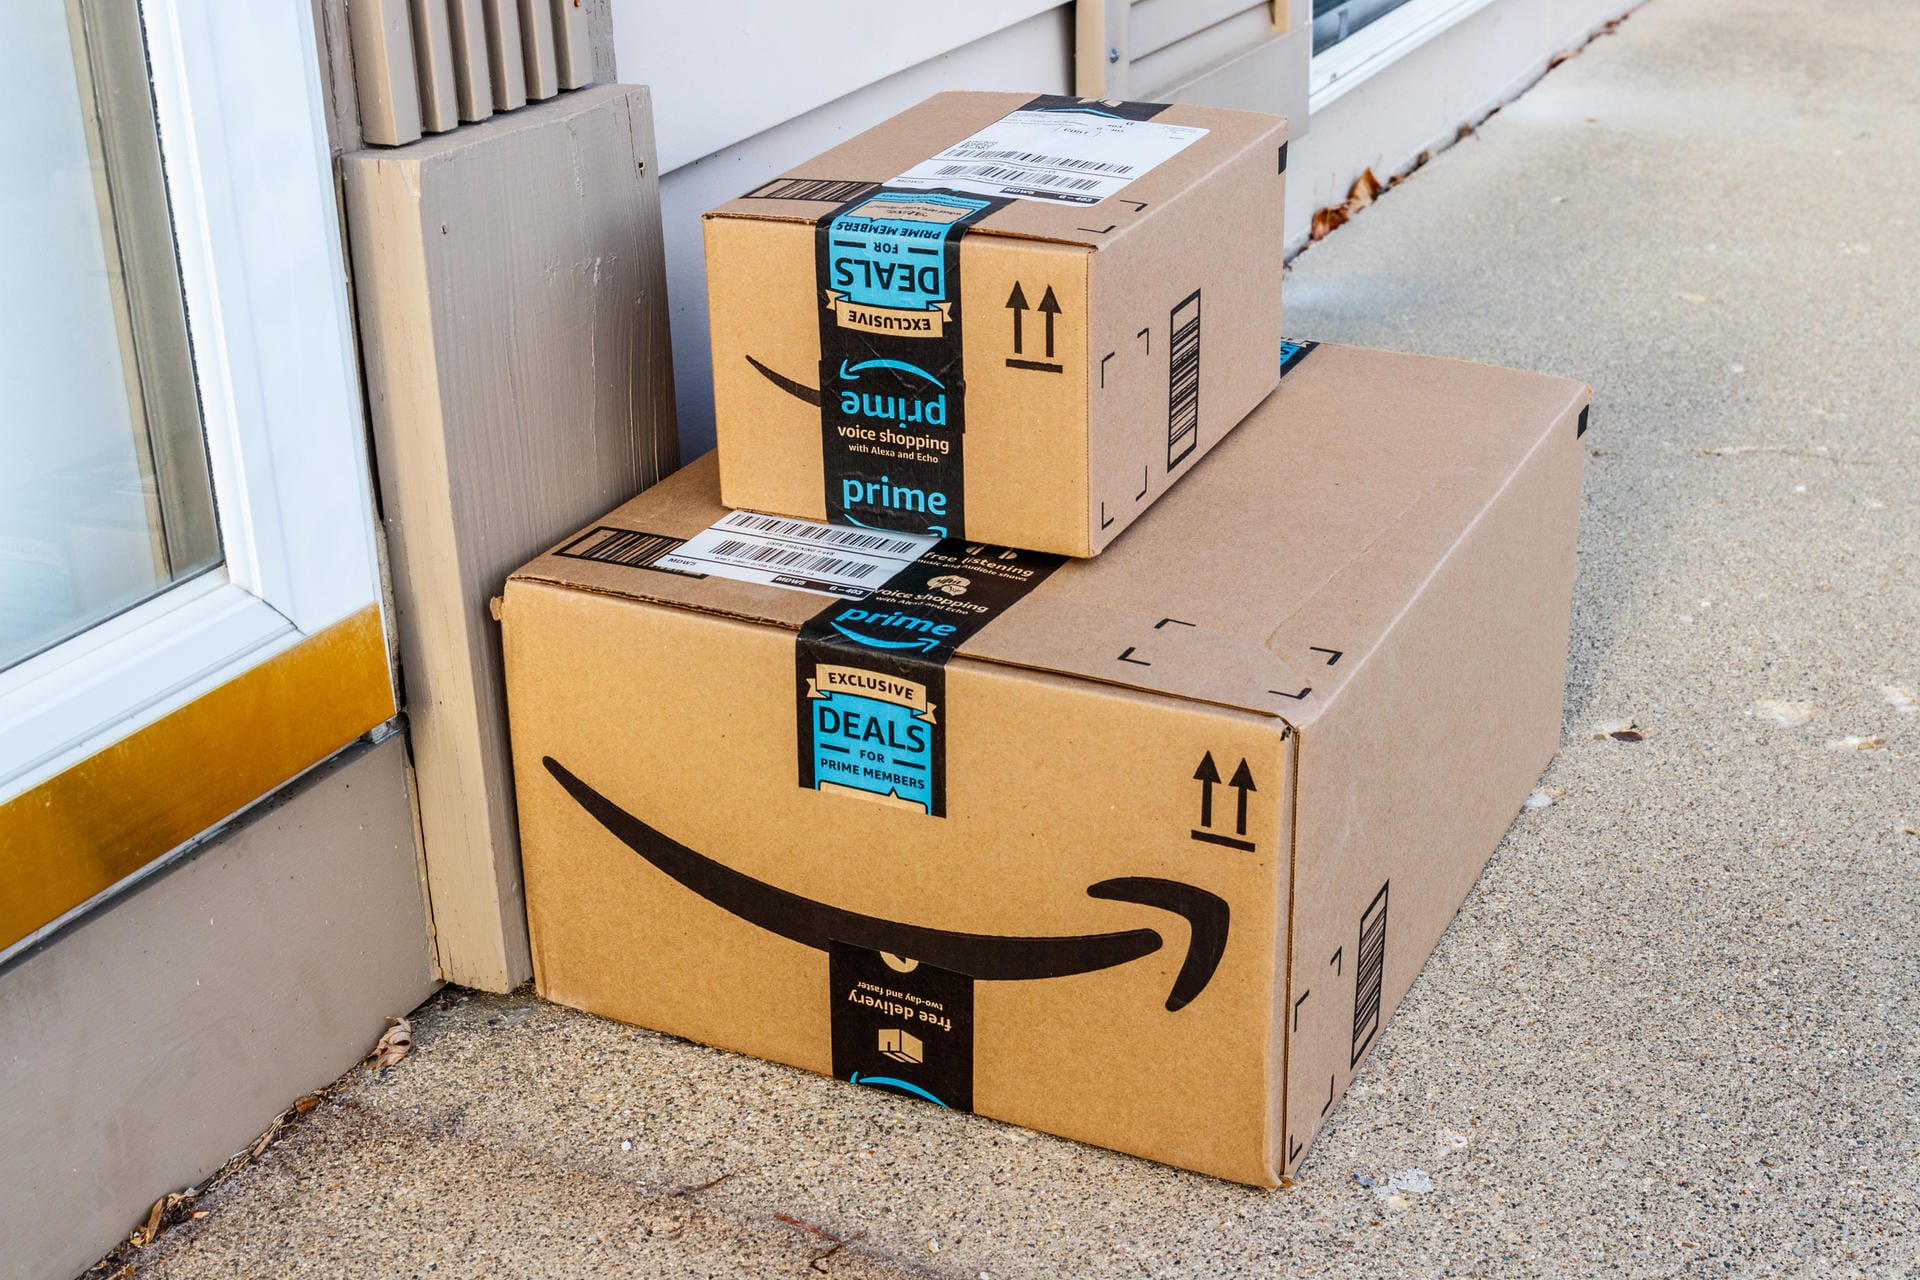 Der Online-Handelsriese Amazon soll 125 Milliarden Dollar wert sein.